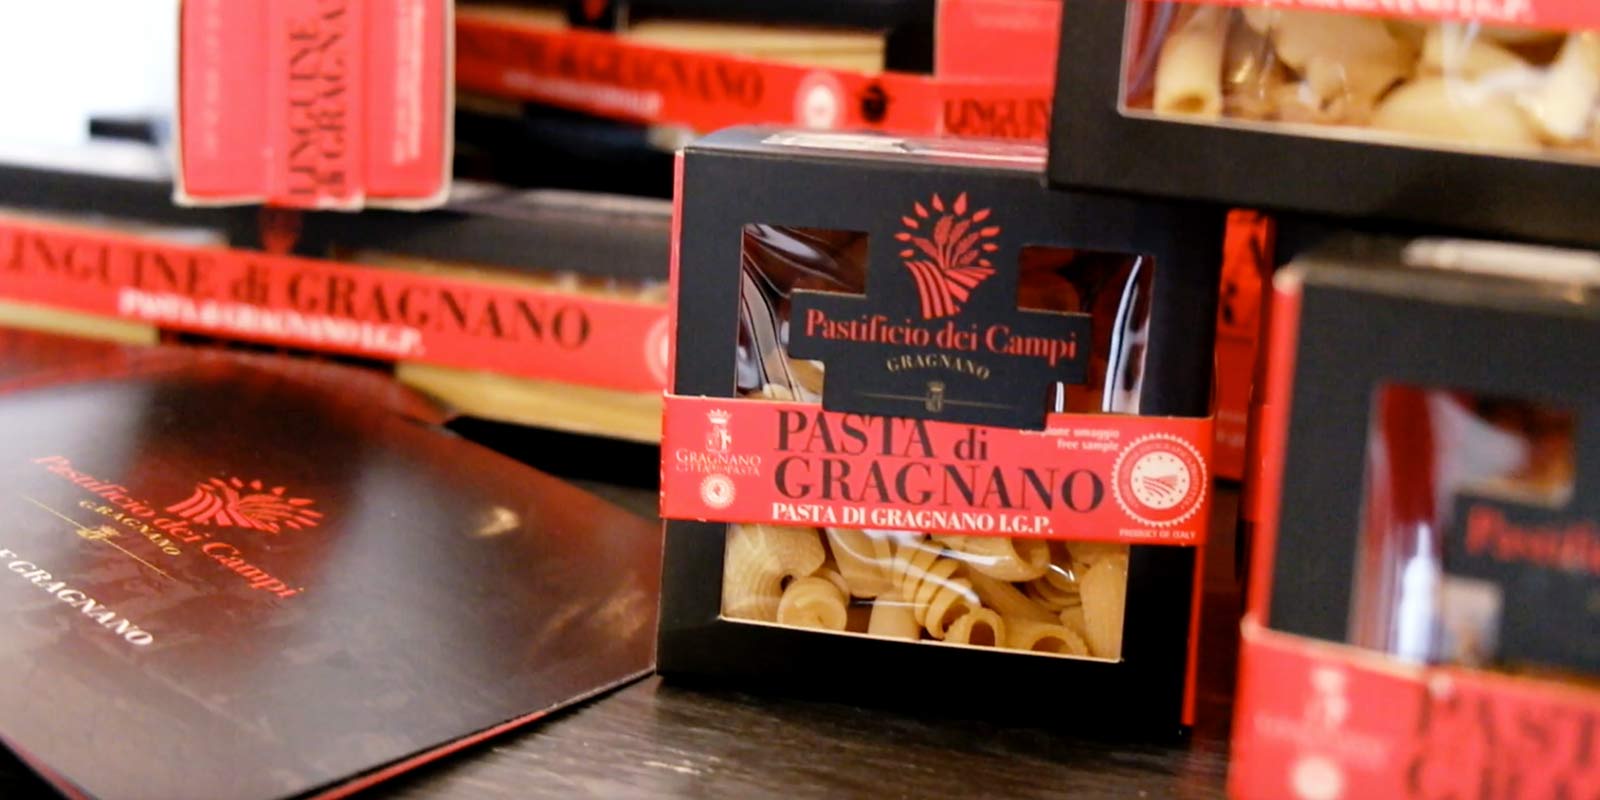 Pastifico dei Campi - Pasta di Gragnano IGP Pastificio dei Campi produkuje niektore talianske klasiky a niektore originalne vytvory. Cestoviny su vyrobene zo 100% talianskej krupice z tvrdej psenice a extrudovane pomocou bronzovych foriem.